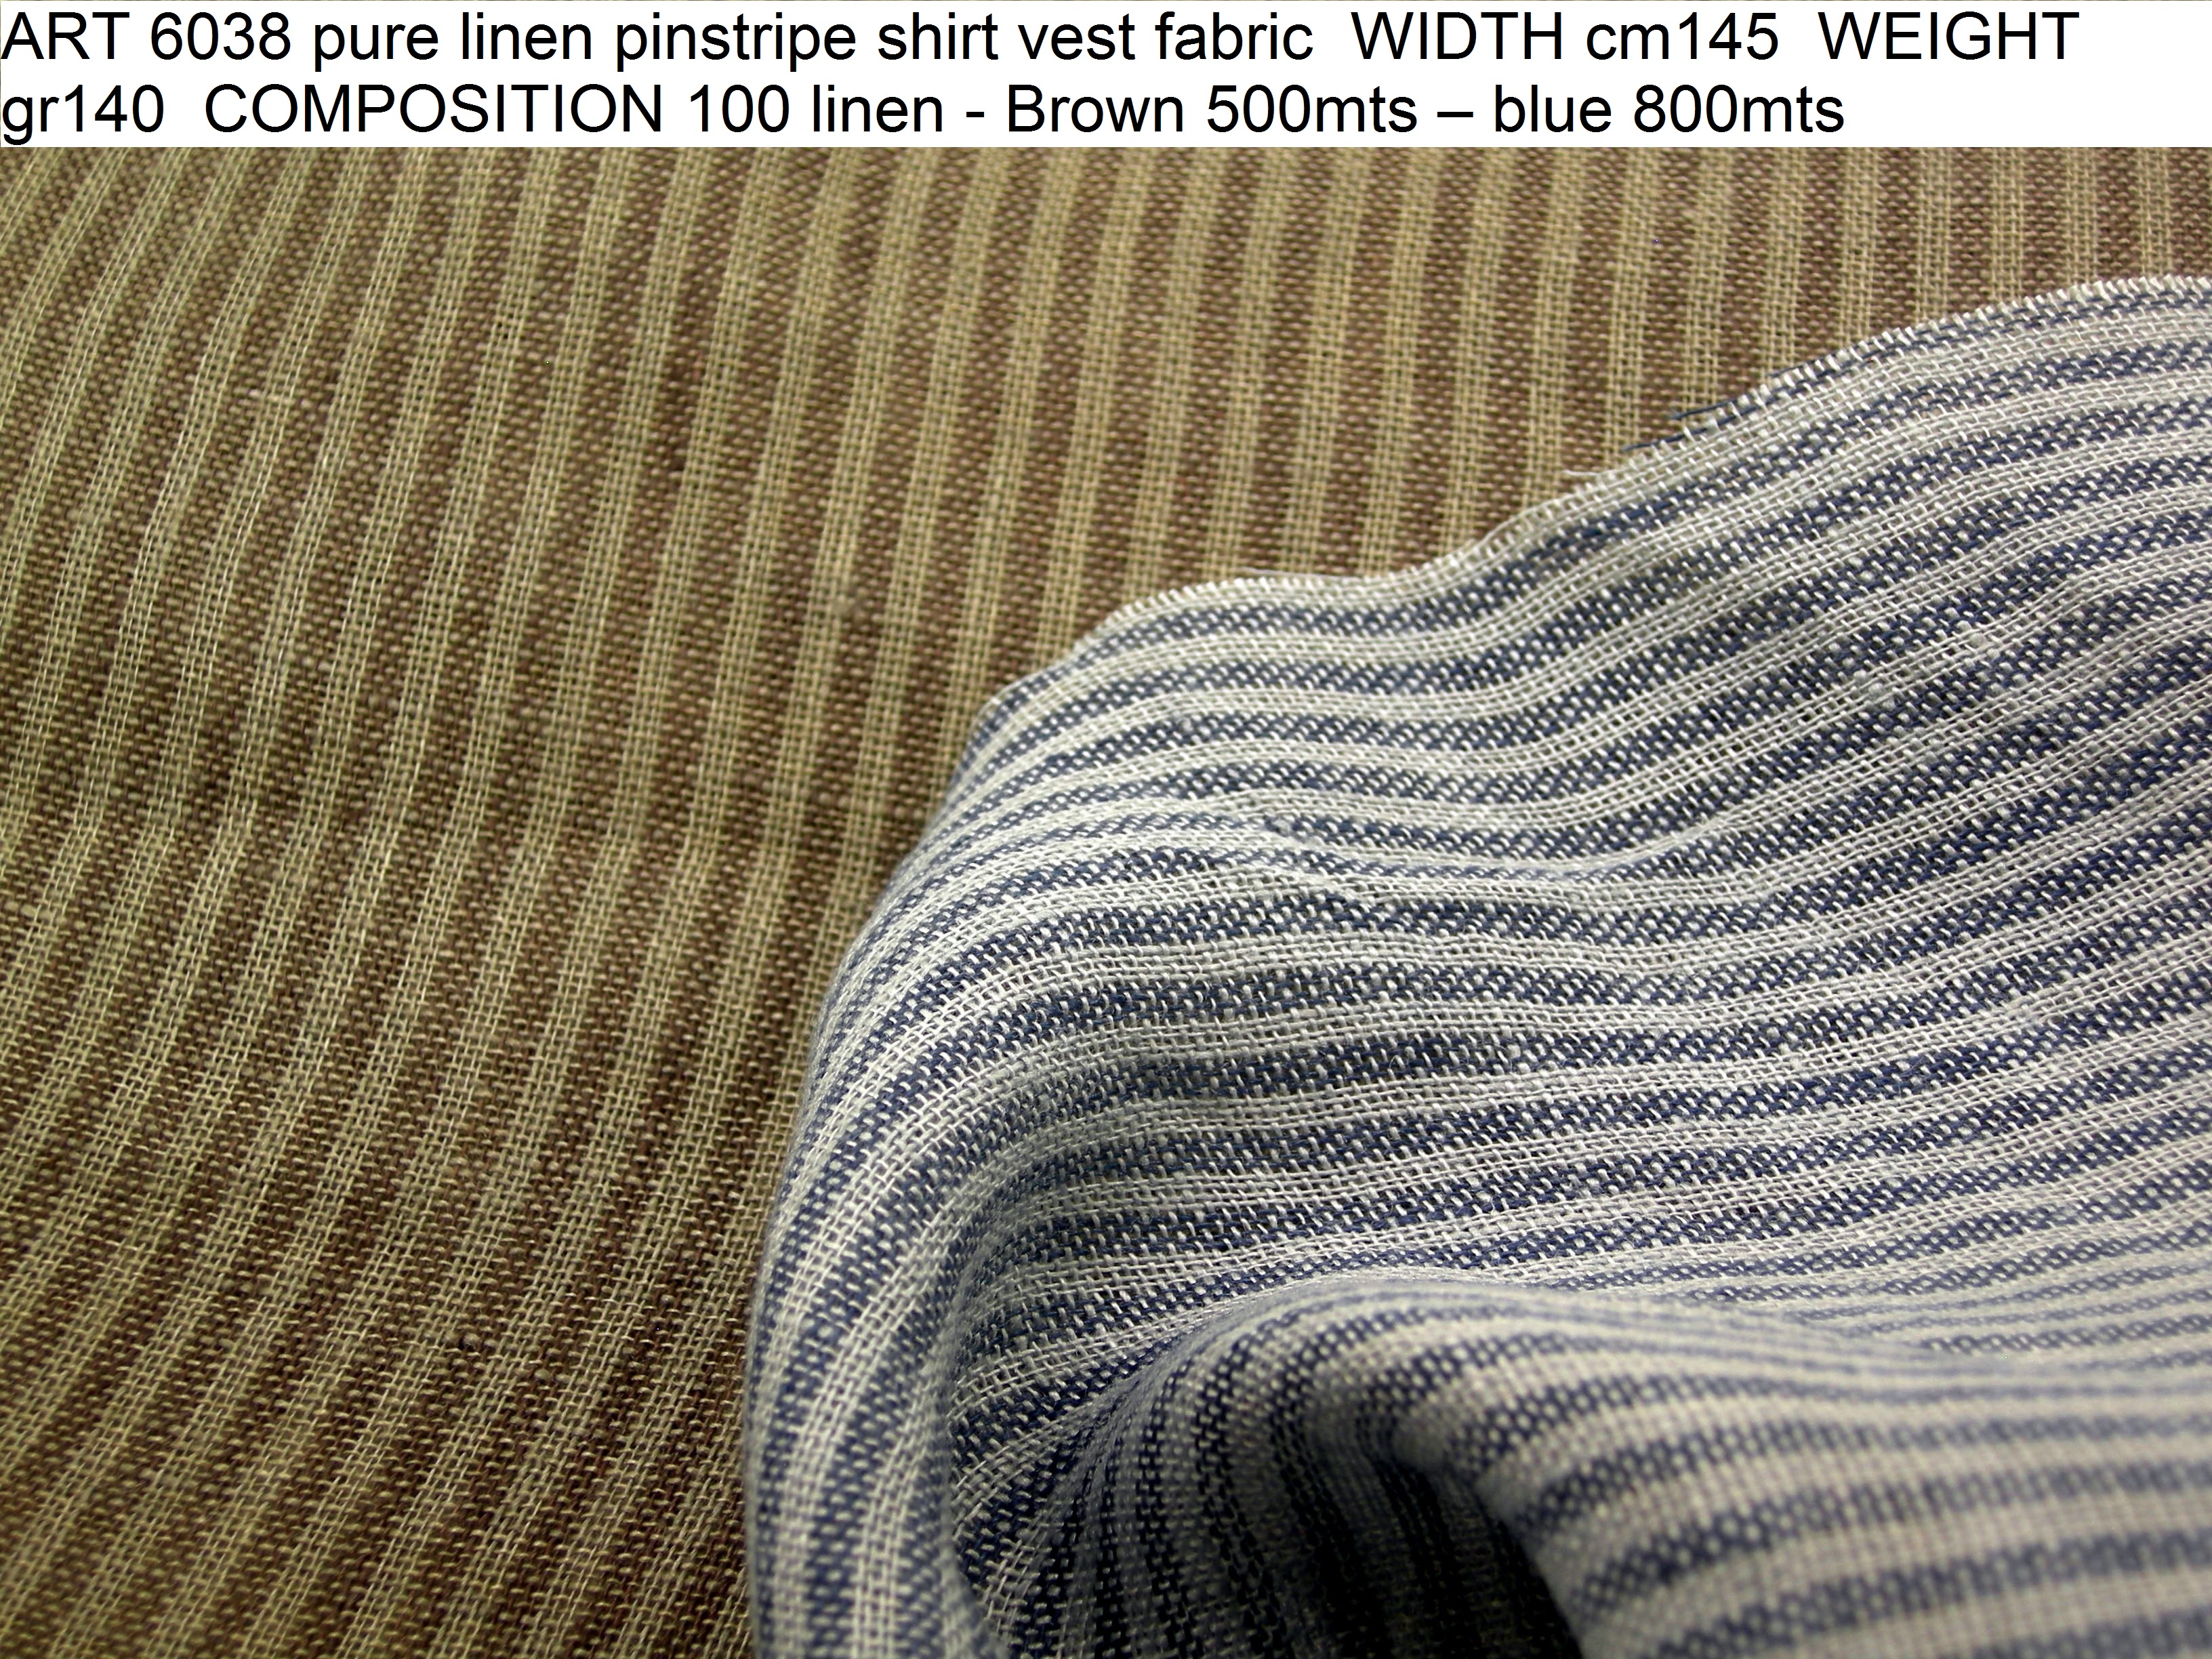 ART 6038 pure linen pinstripe shirt vest fabric WIDTH cm145 WEIGHT gr140 COMPOSITION 100 linen - Brown 500mts – blue 800mts